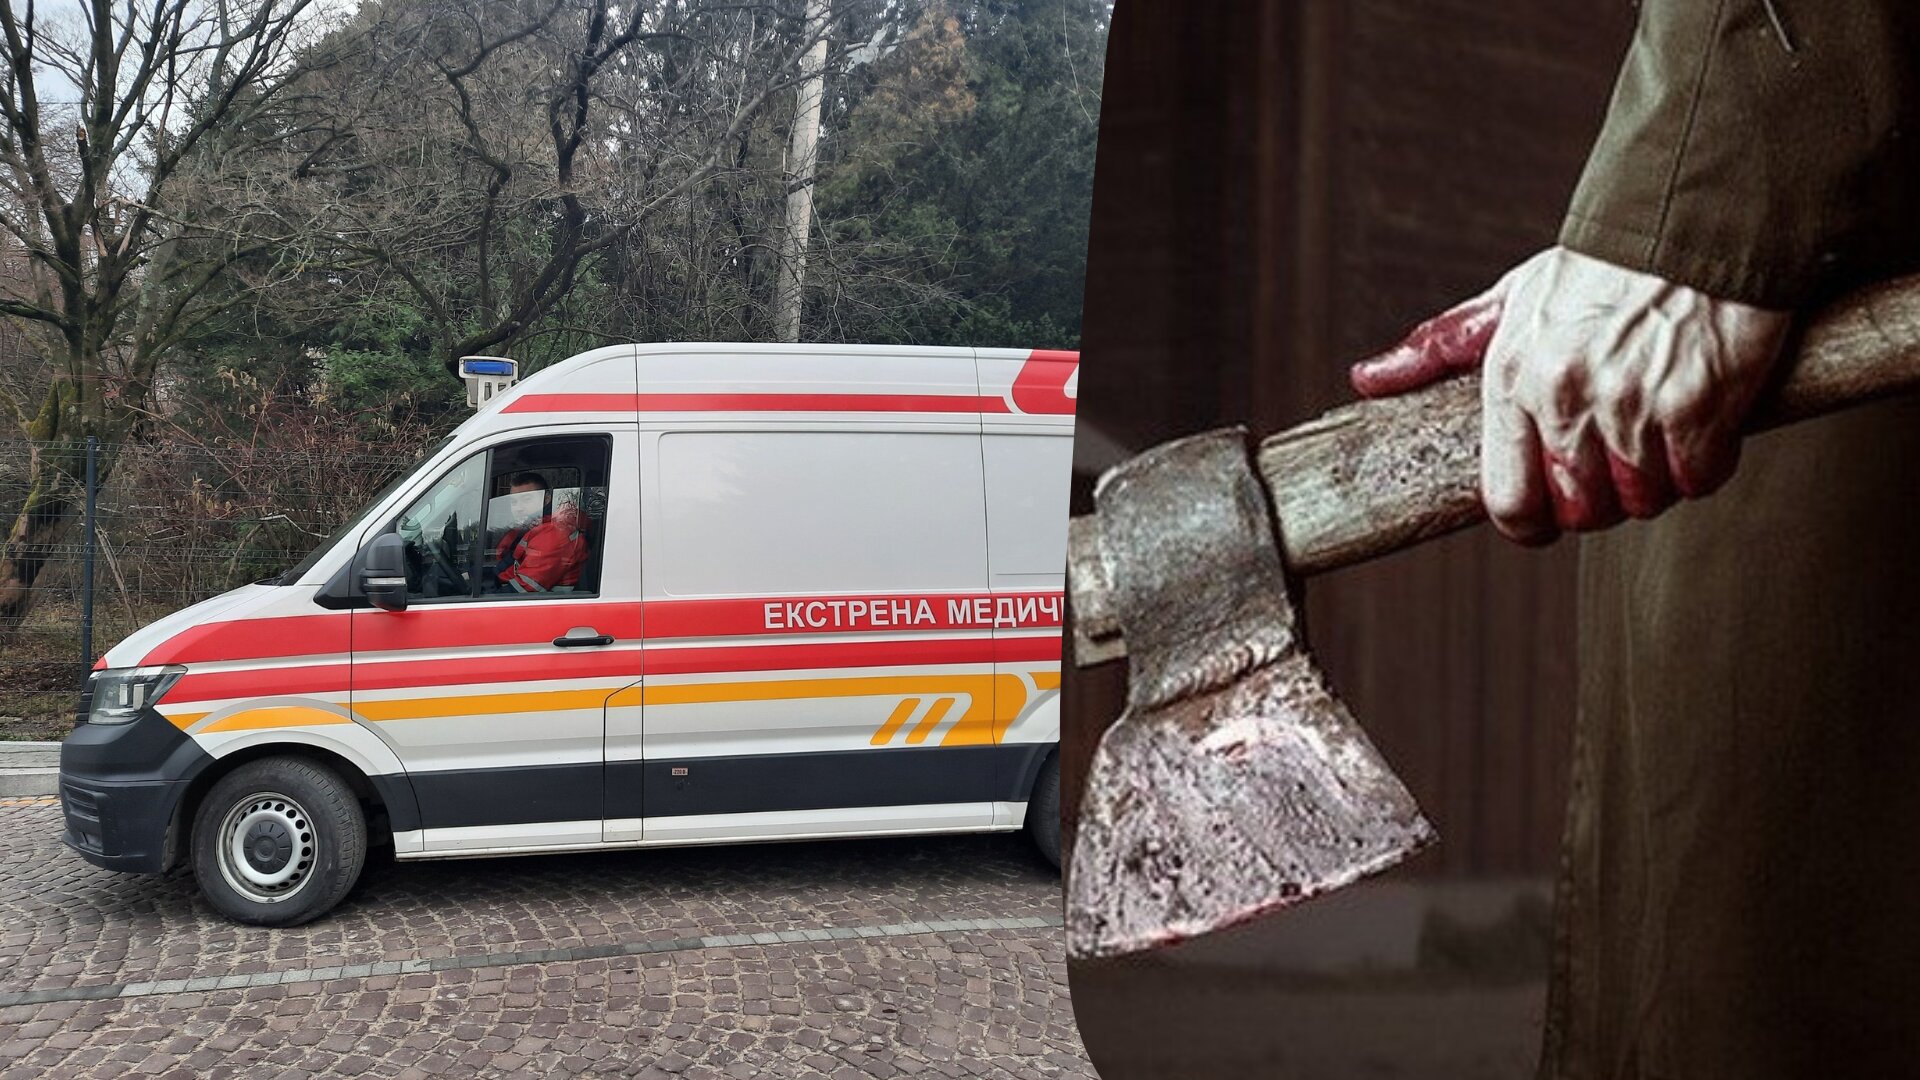 На Львівщині медики екстреної служби під час виклику знайшли тіло вбитого чоловіка та ледве не стали жертвами нападу рецидивіста з сокирою.

